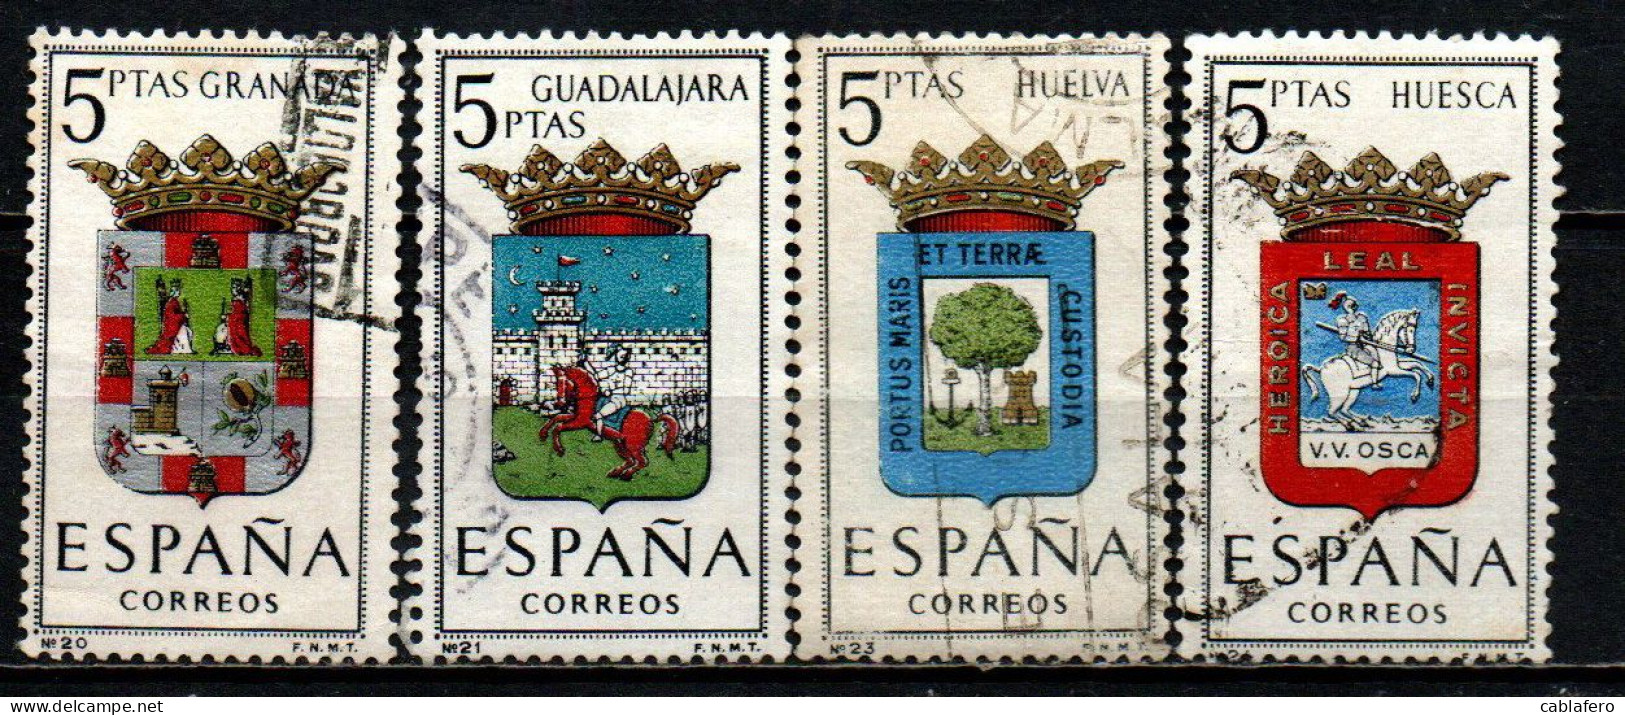 SPAGNA - 1963 - STEMMI DELLE PROVINCE SPAGNOLE: GRANADA, GUADALAJARA, HUELVA, HUESCA - USATI - Oblitérés